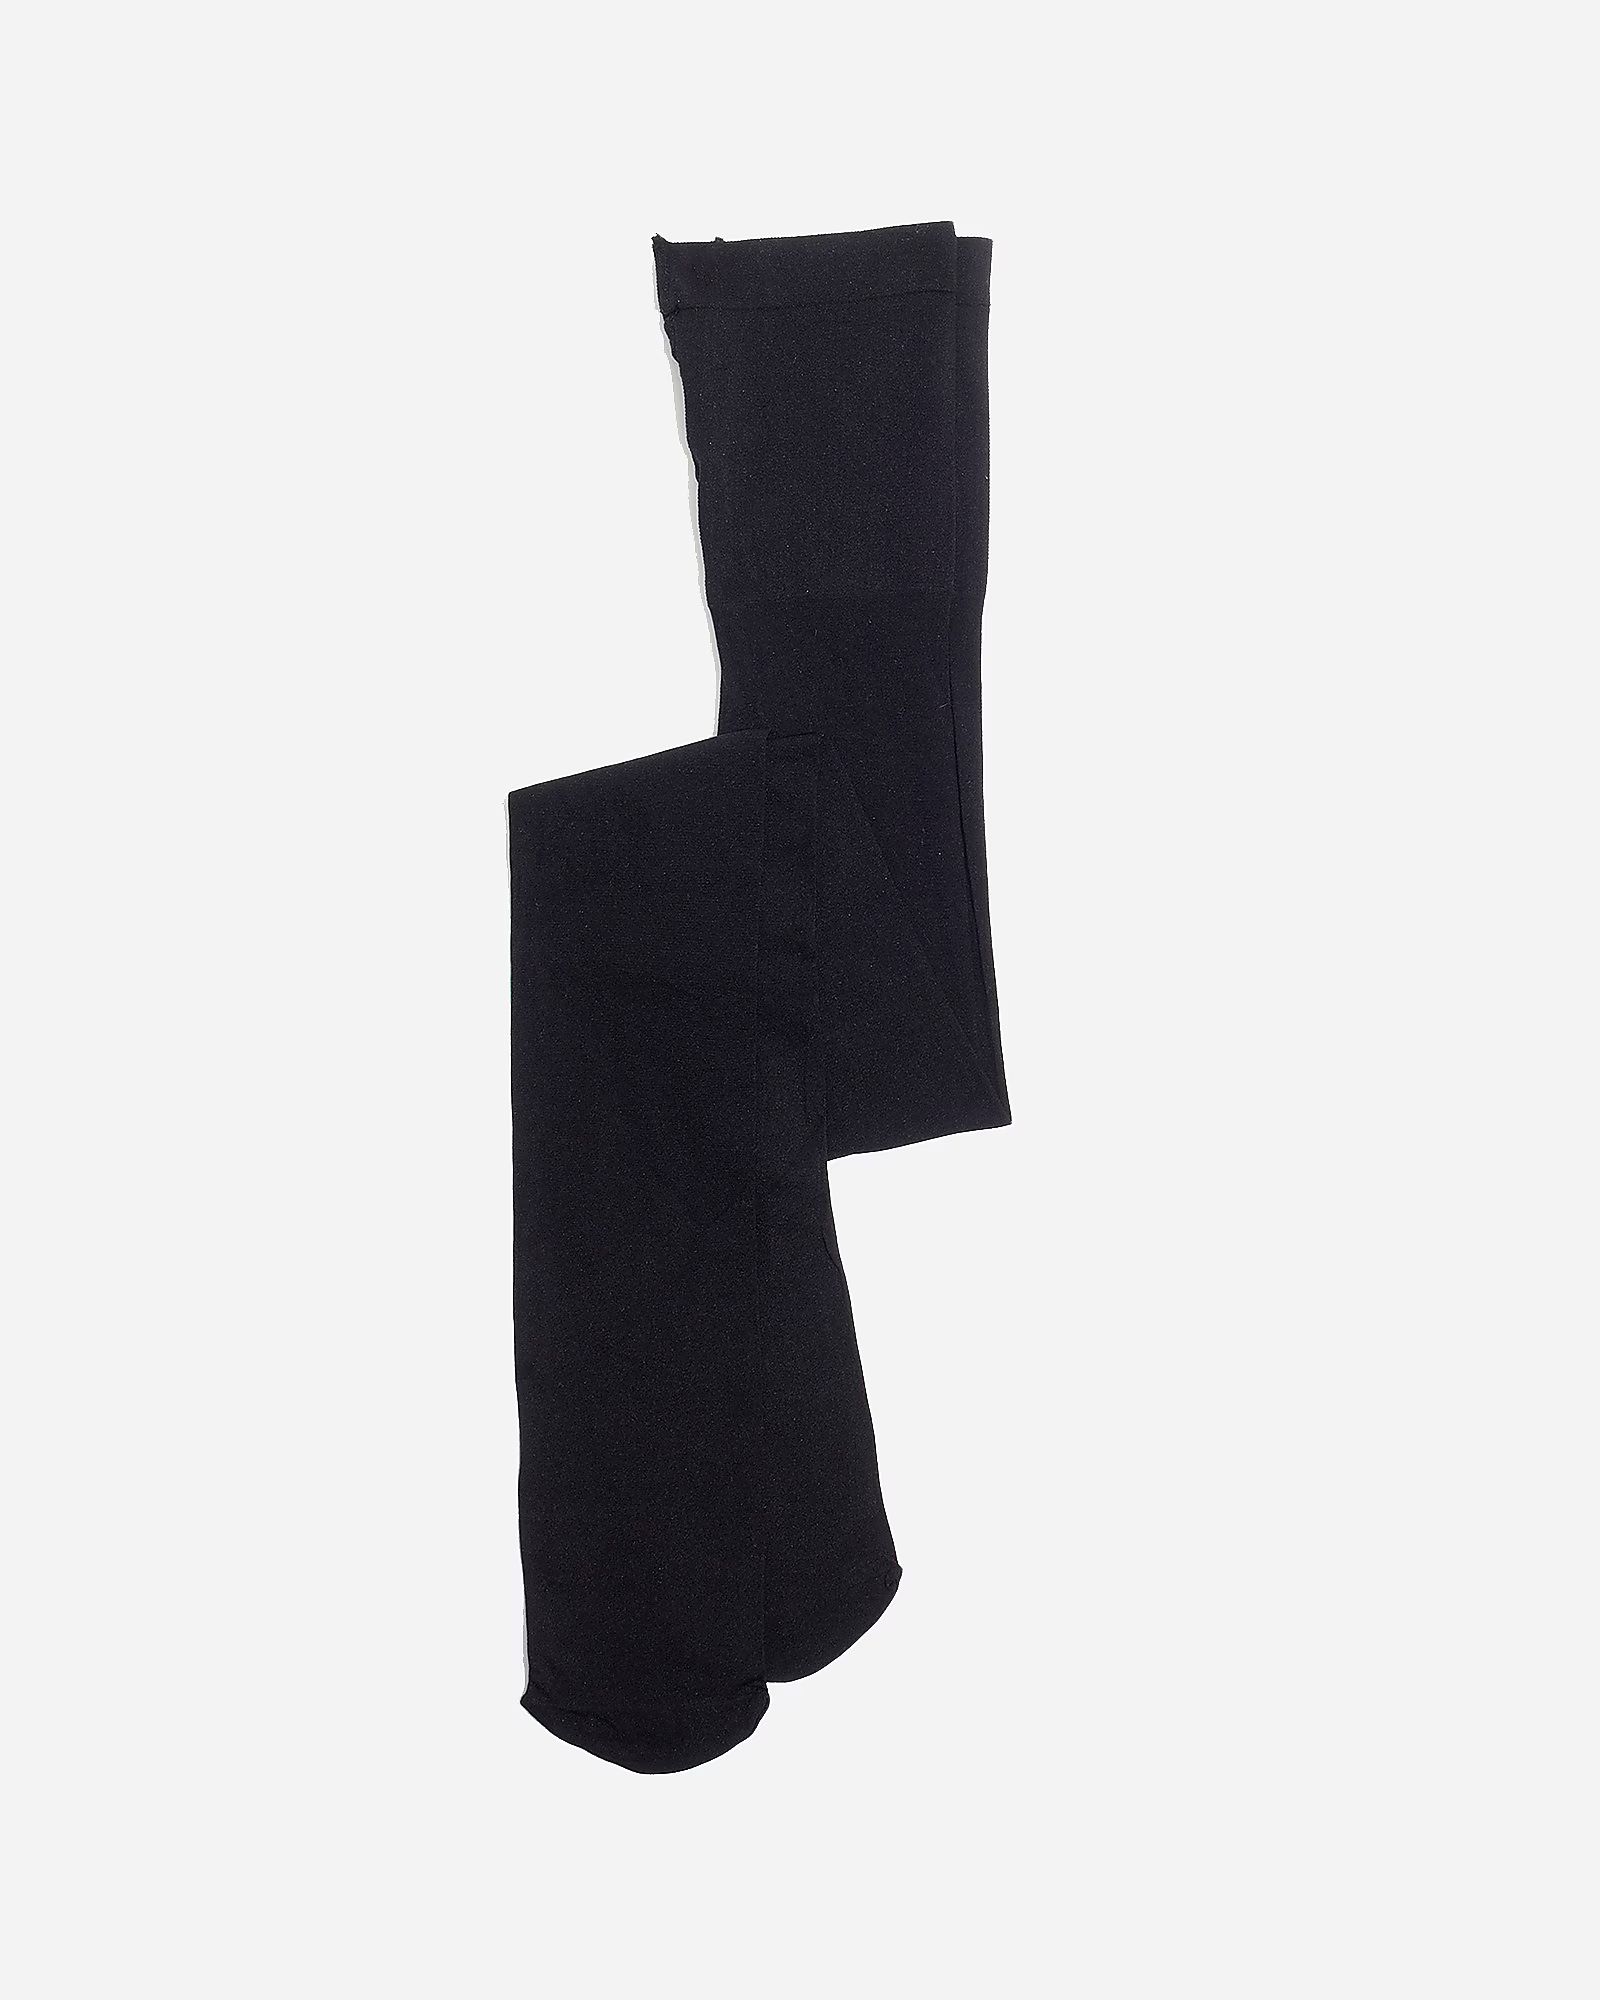 Swedish Stockings™ Doris dot tights | J.Crew US